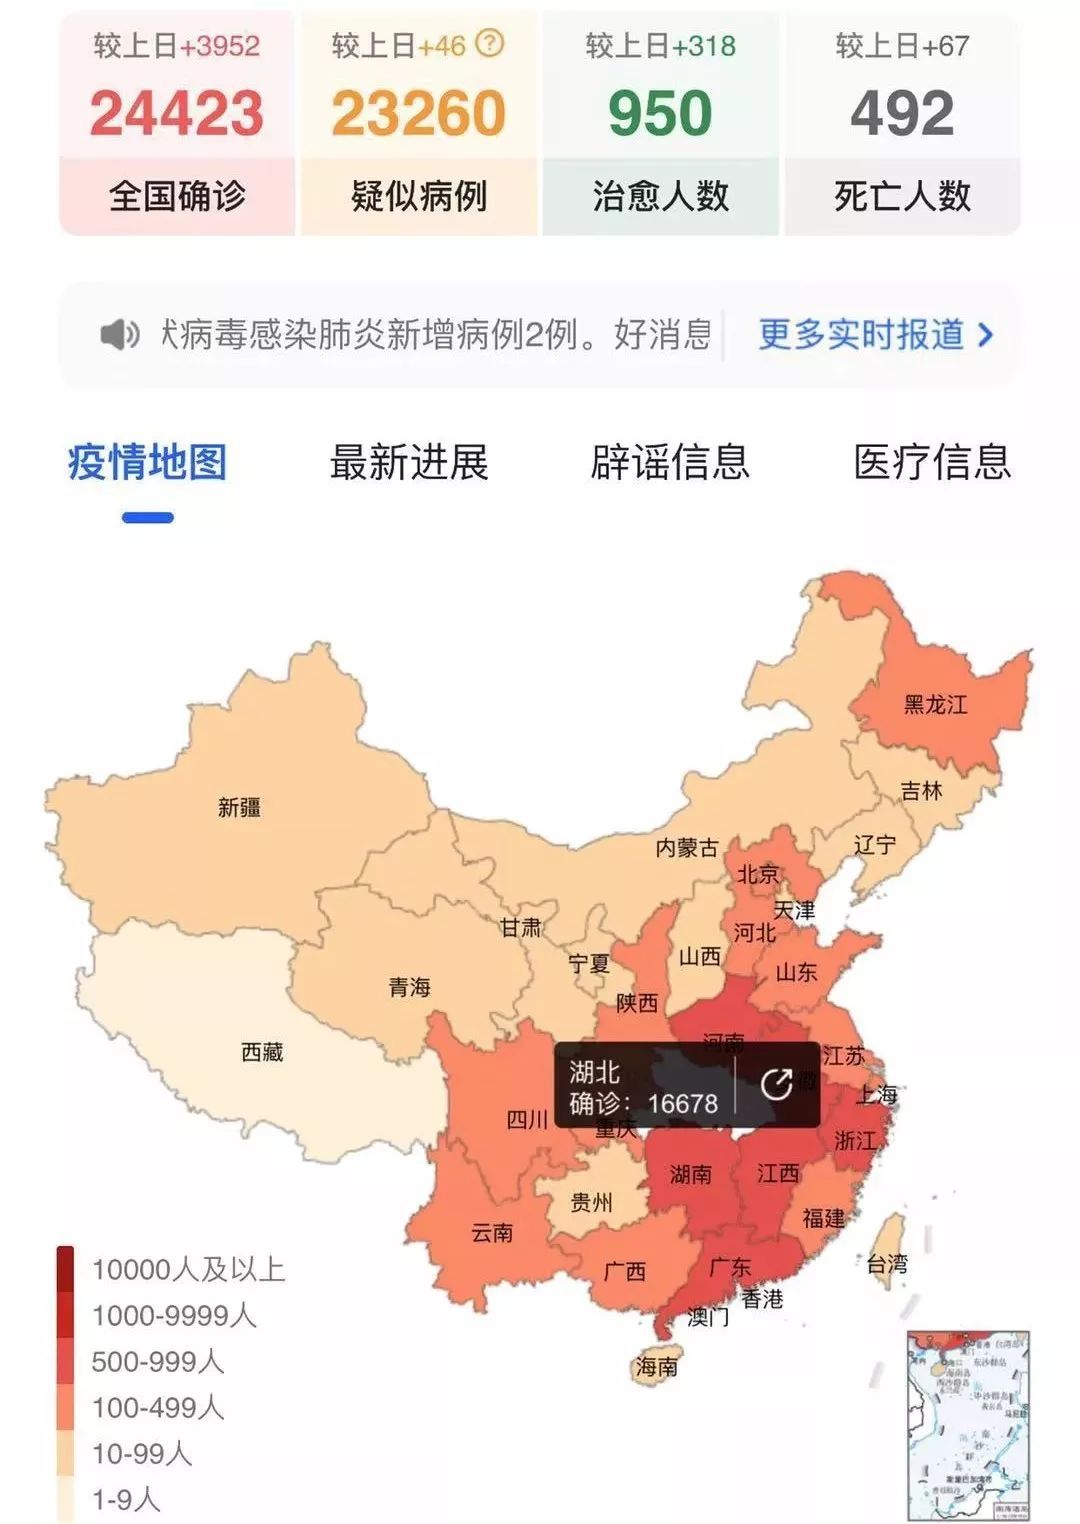 2020年中国疫情分布图图片